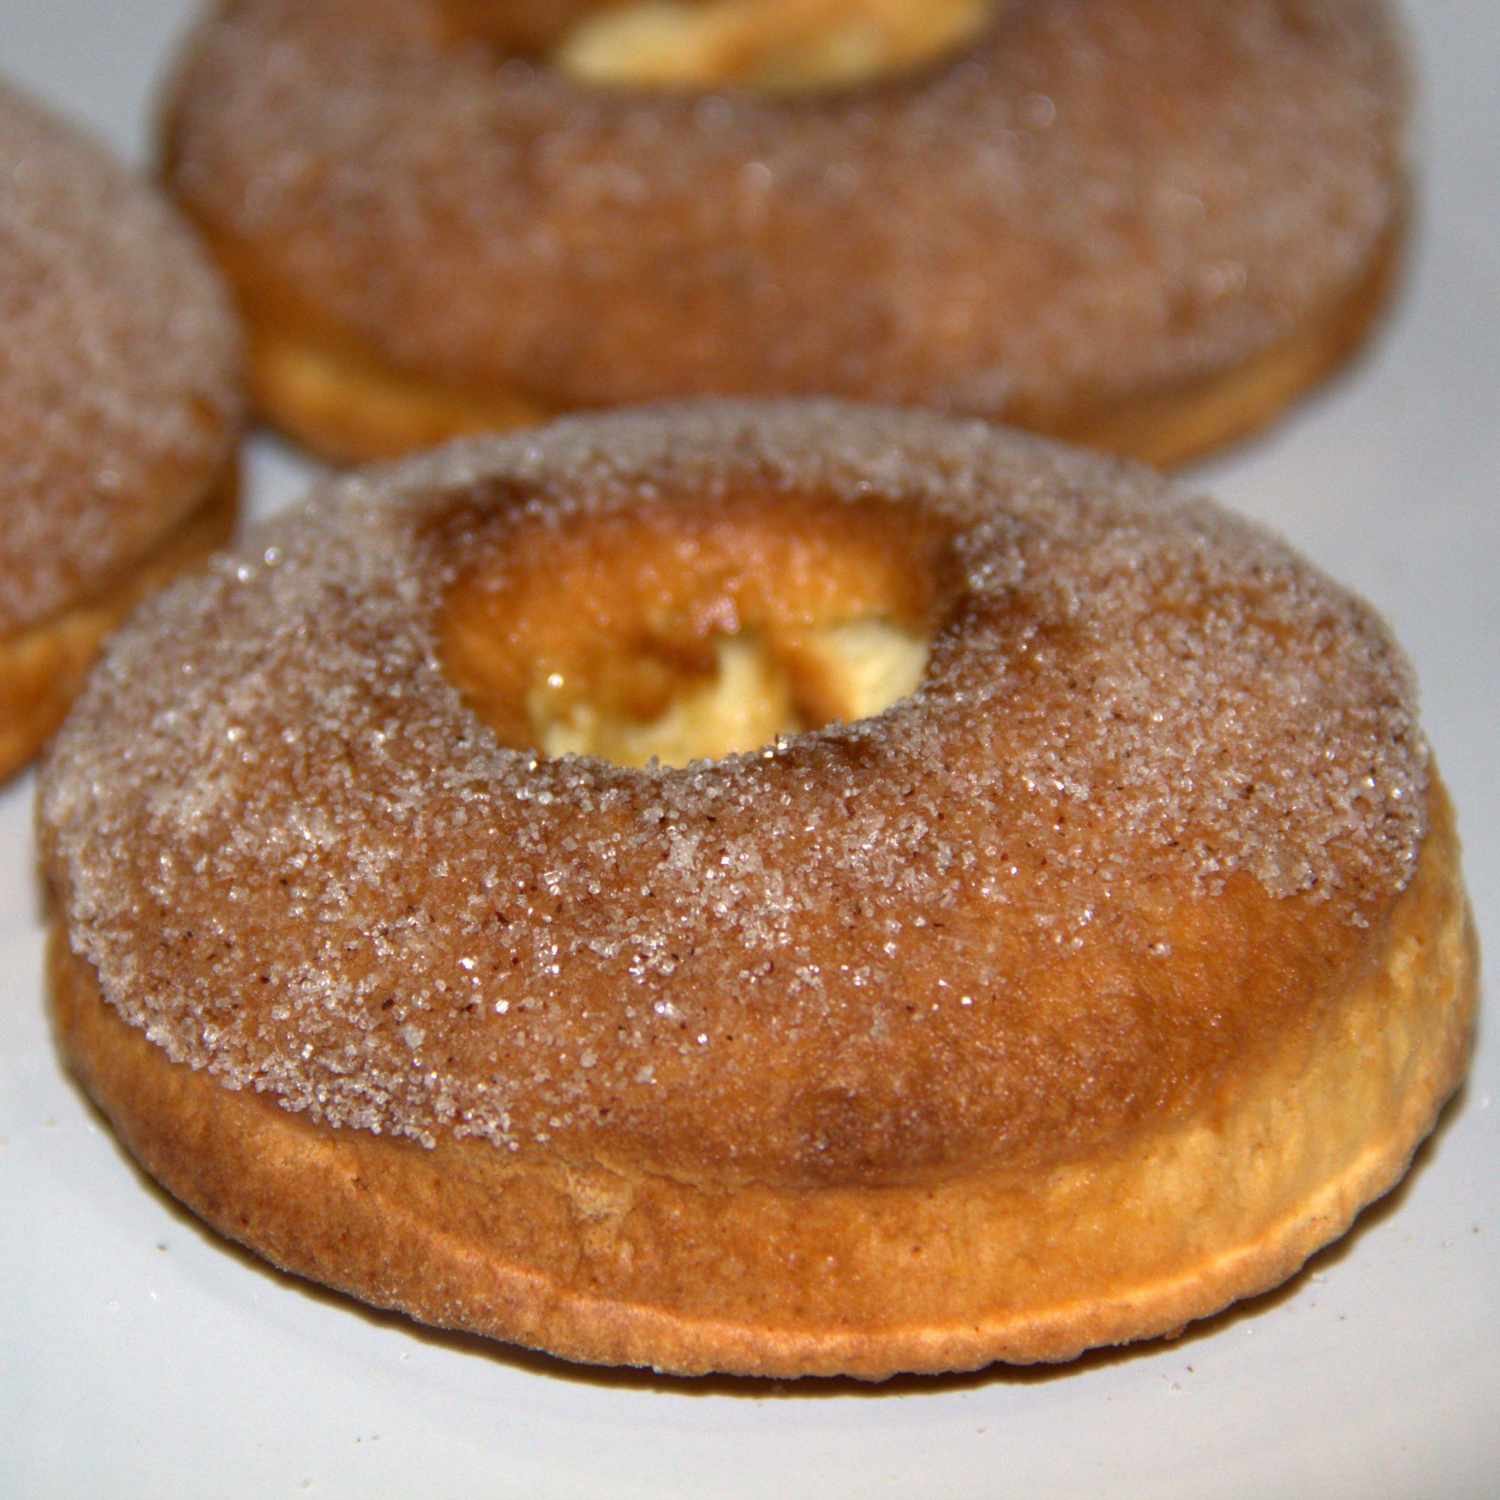 Air-Fried Cinnamon and Sugar Doughnuts